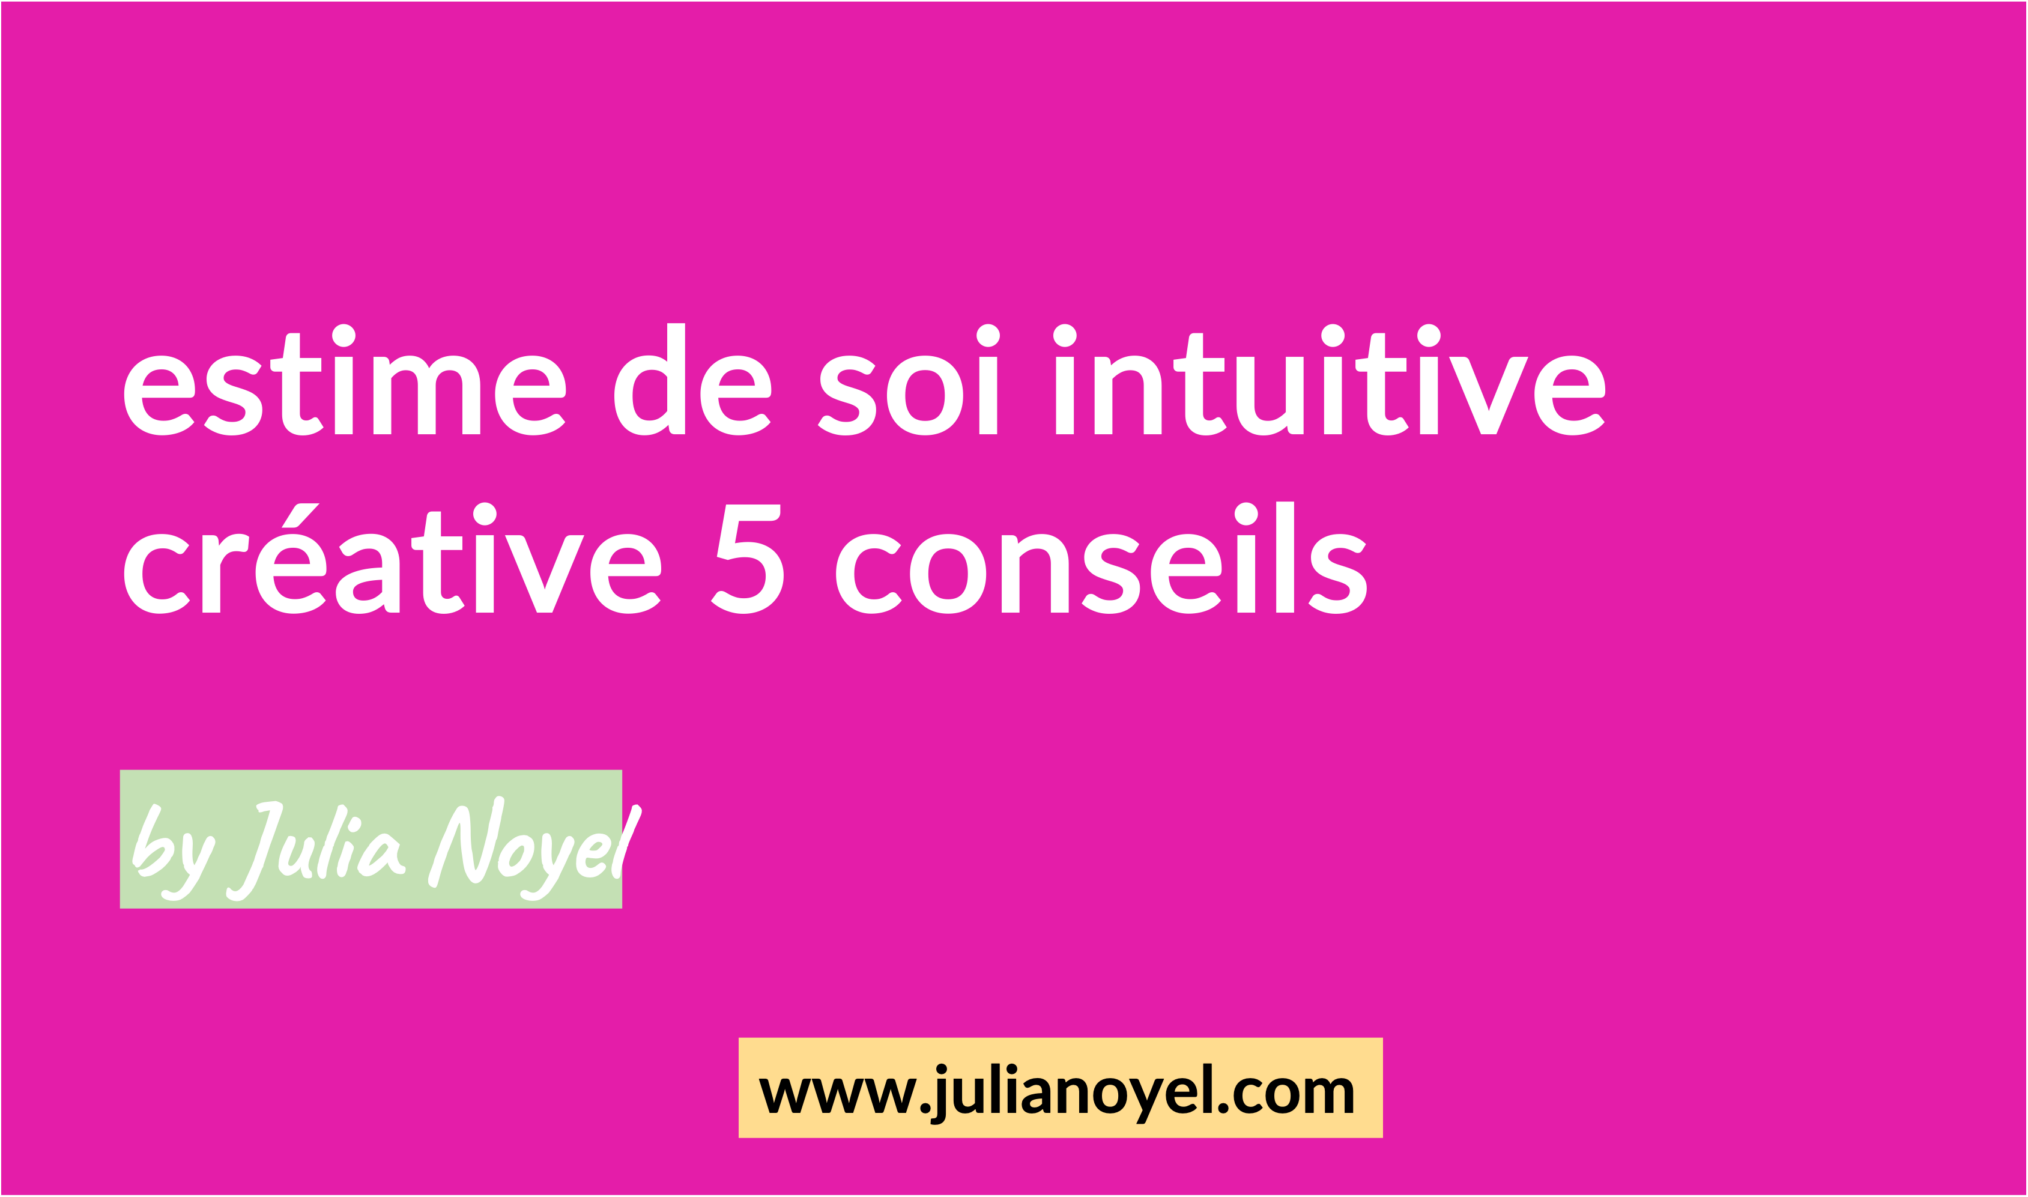 estime de soi intuitive créative 5 conseils by Julia Noyel